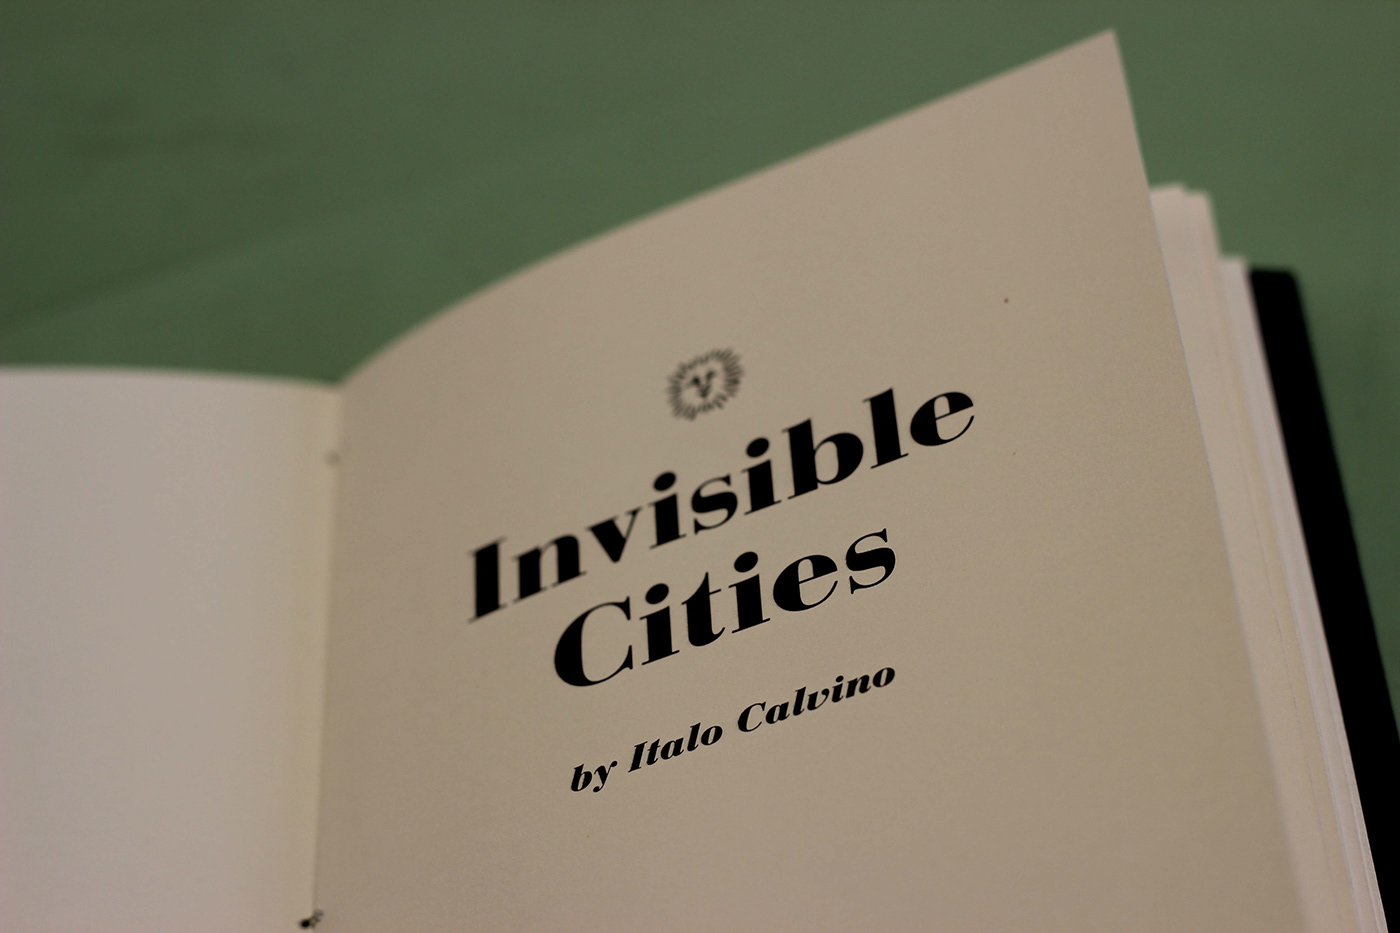 book Bookbinding Invisible Cities calvino